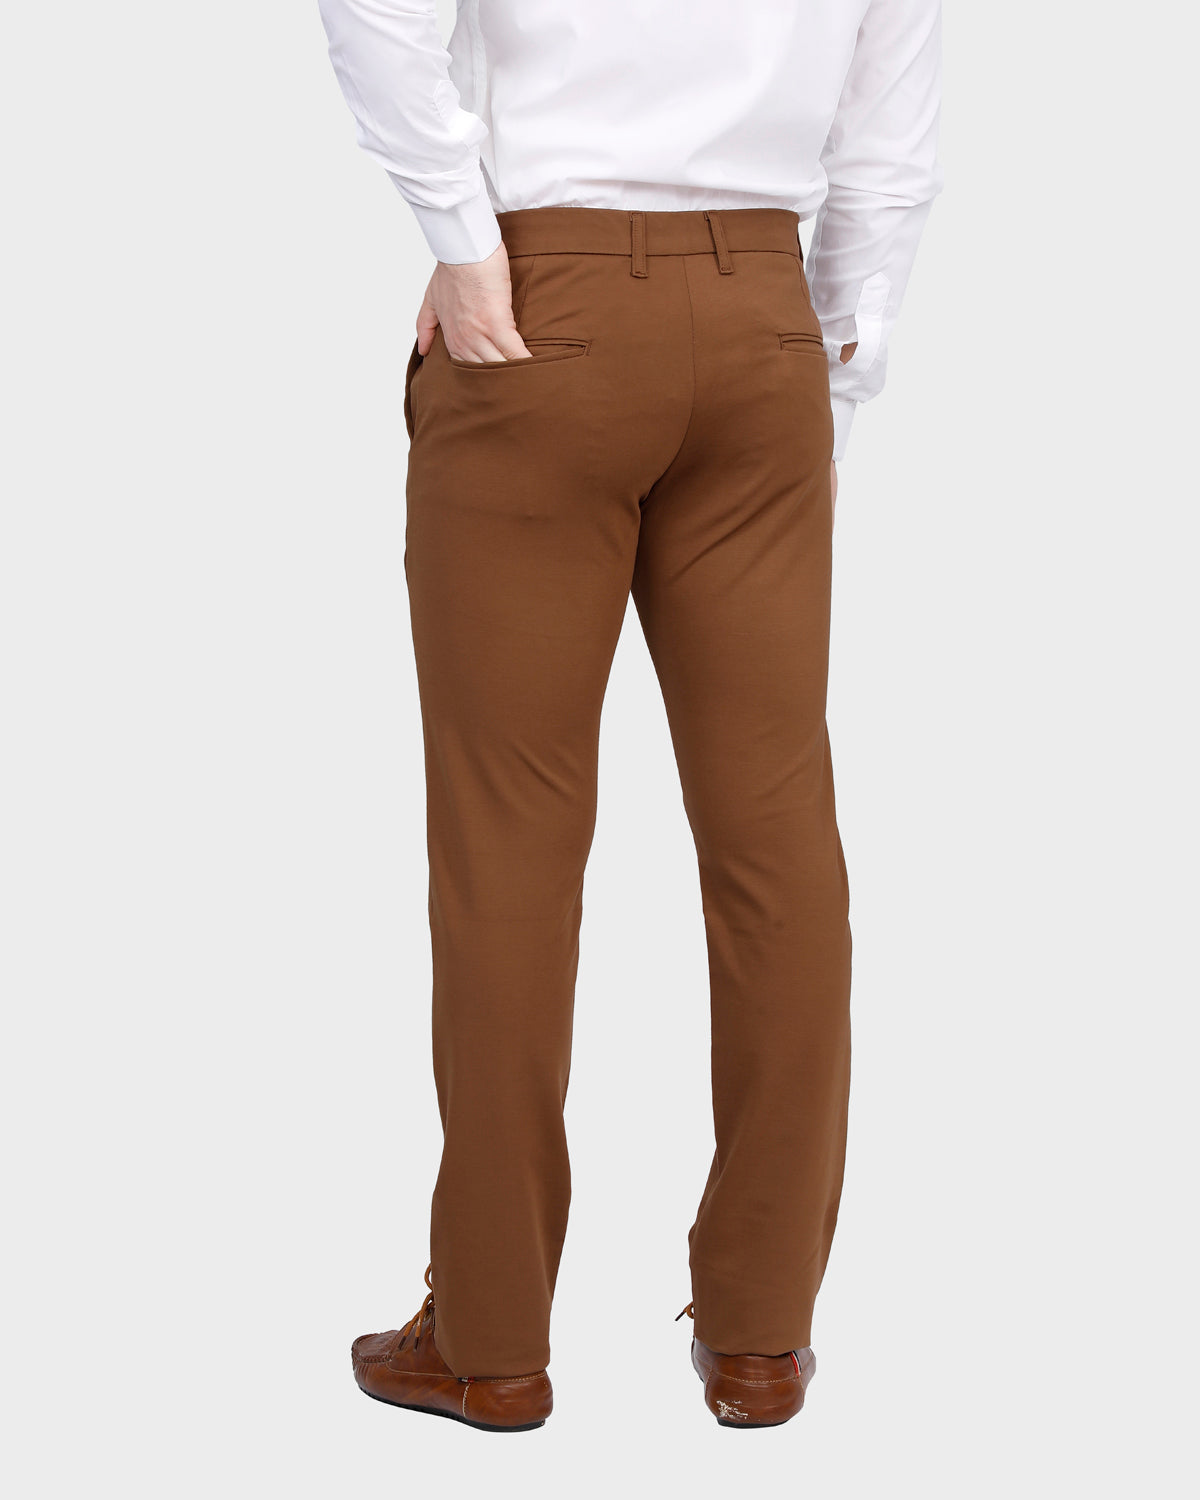 Men's Classic Brown Slim Fit Pant